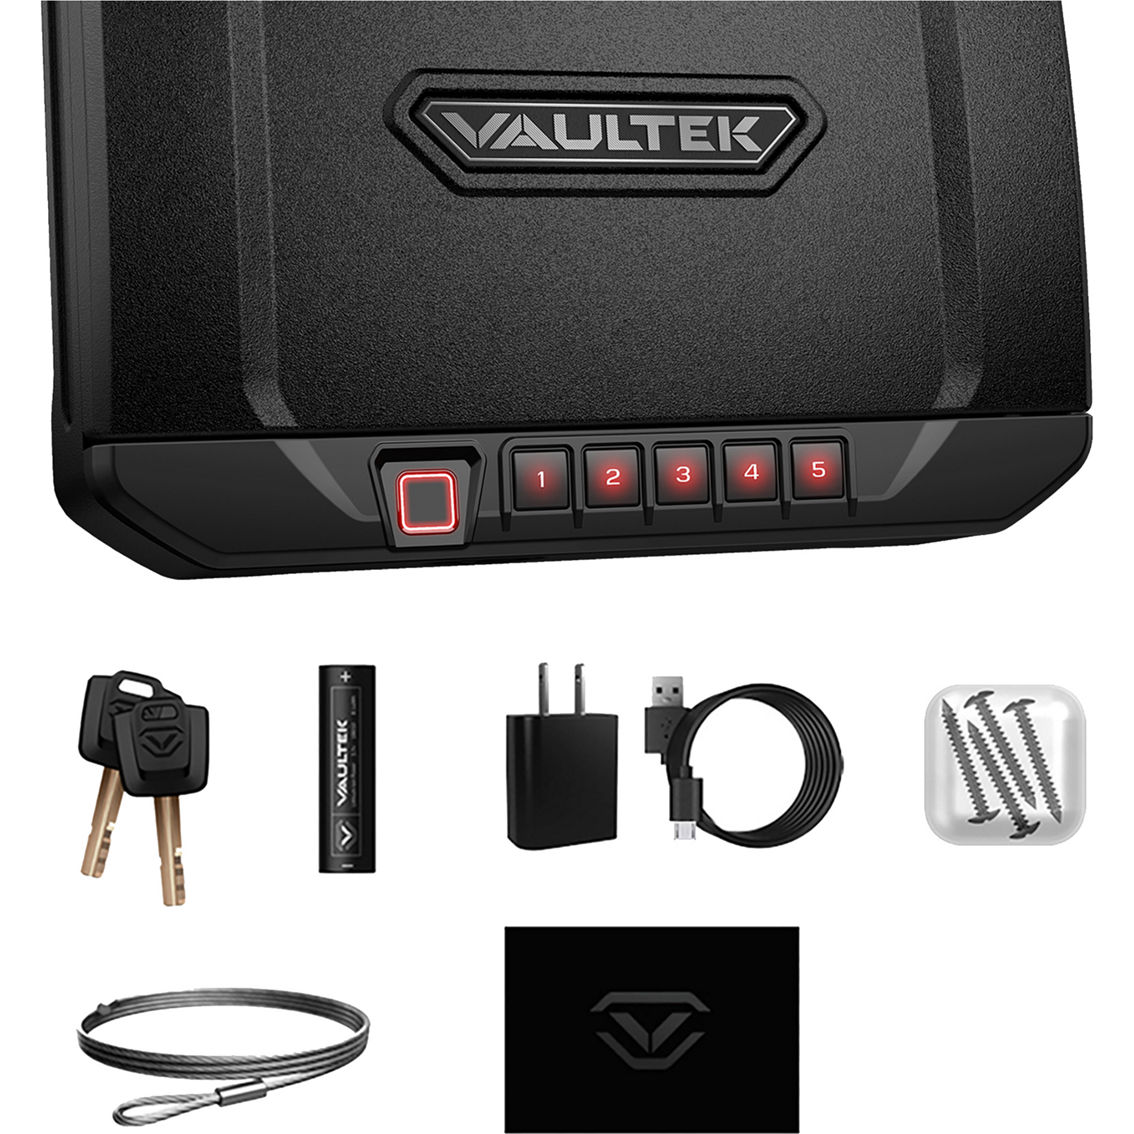 Vaultek 20 Series VS20i Safe - Image 4 of 4